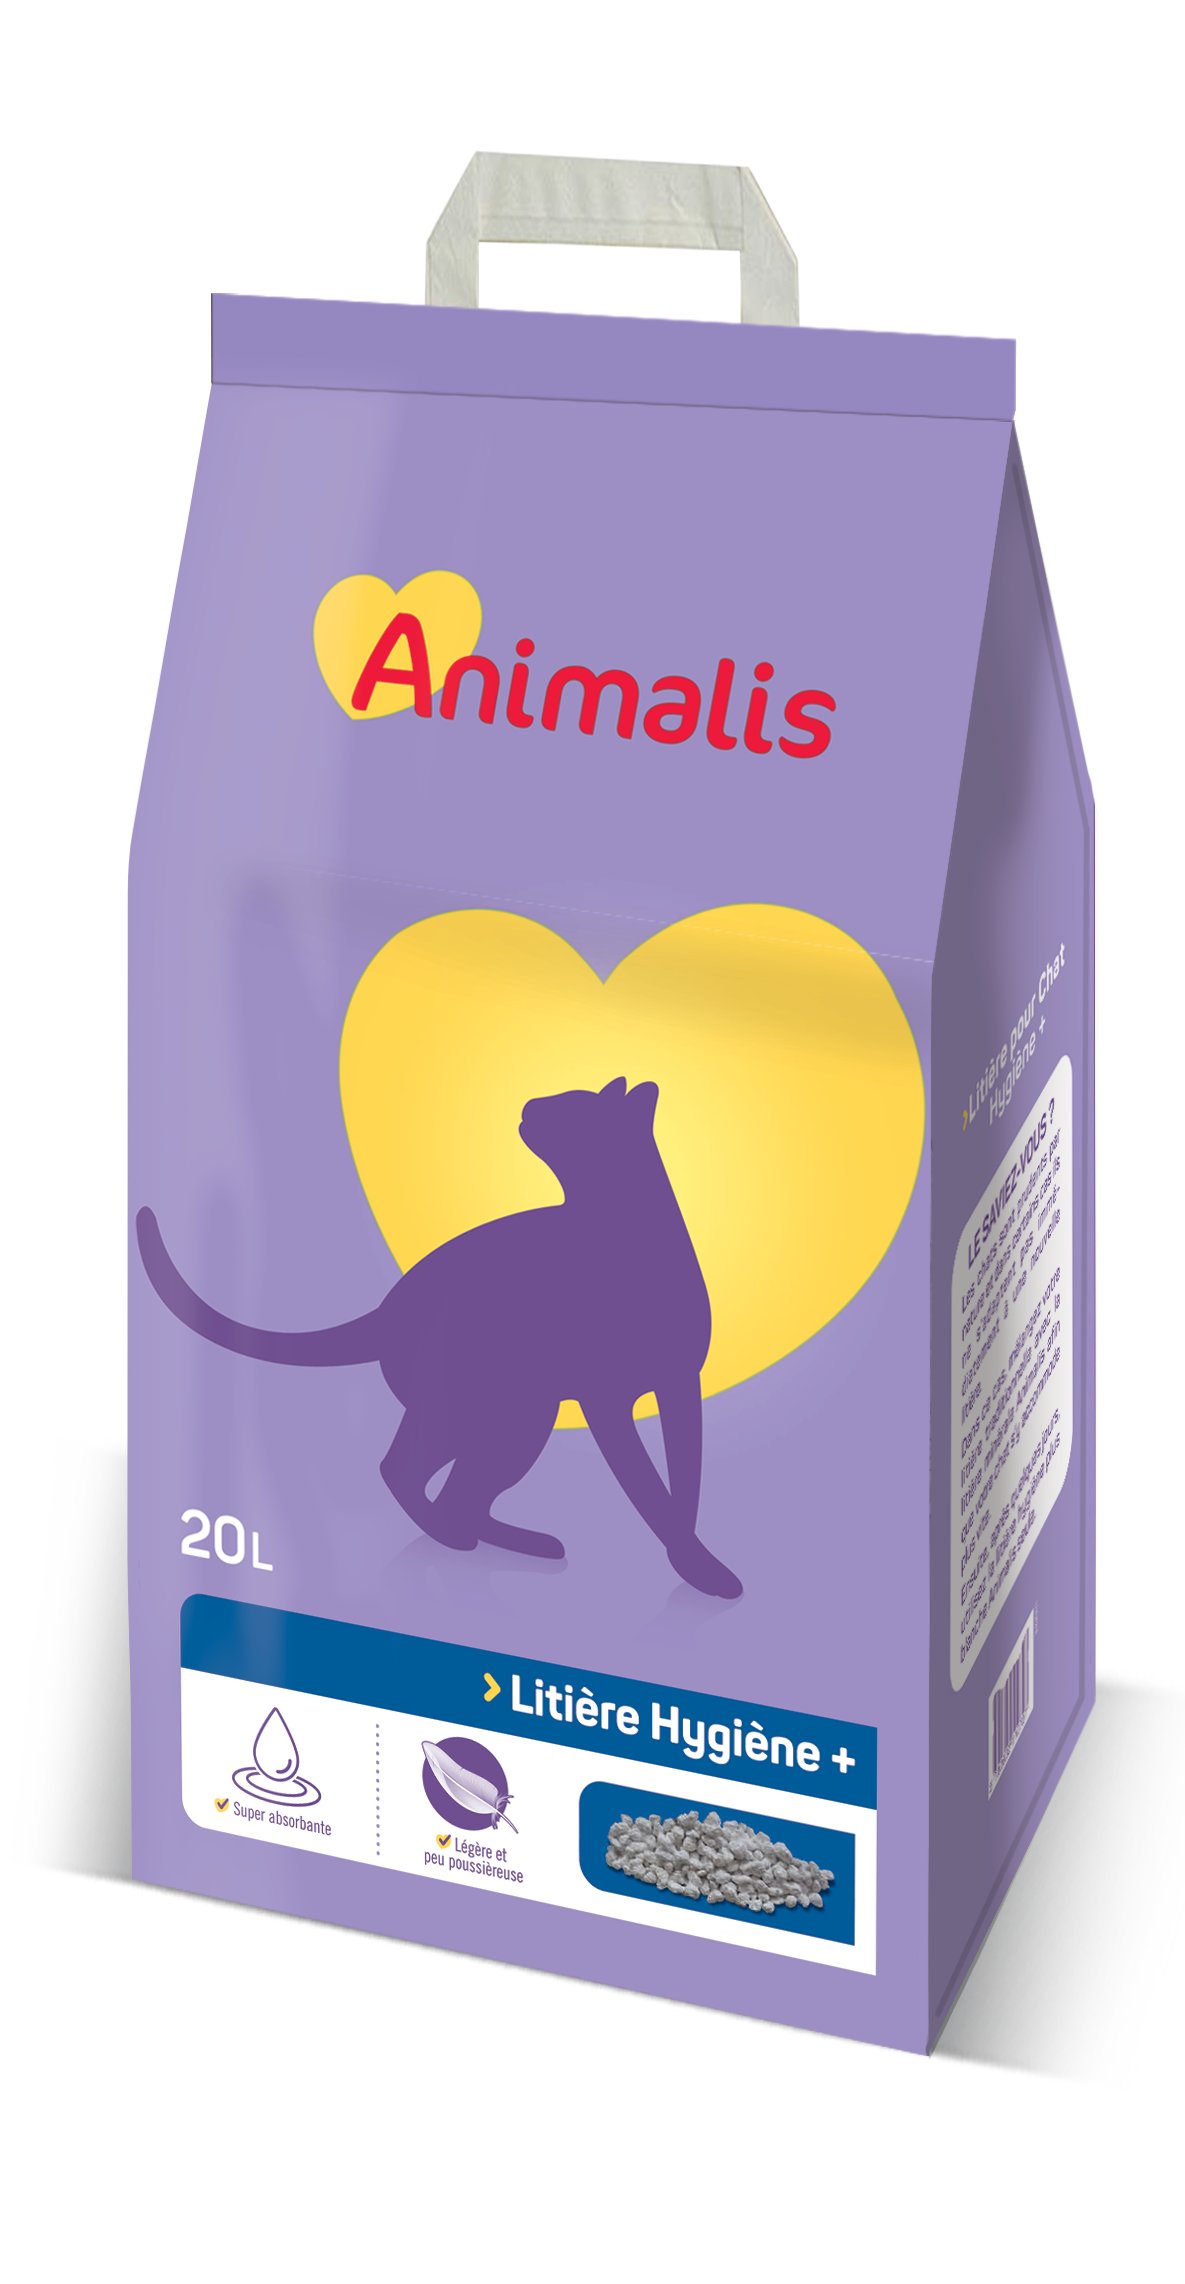 Animalis - Litière Hygiène Plus Minérale pour Chat - 20L